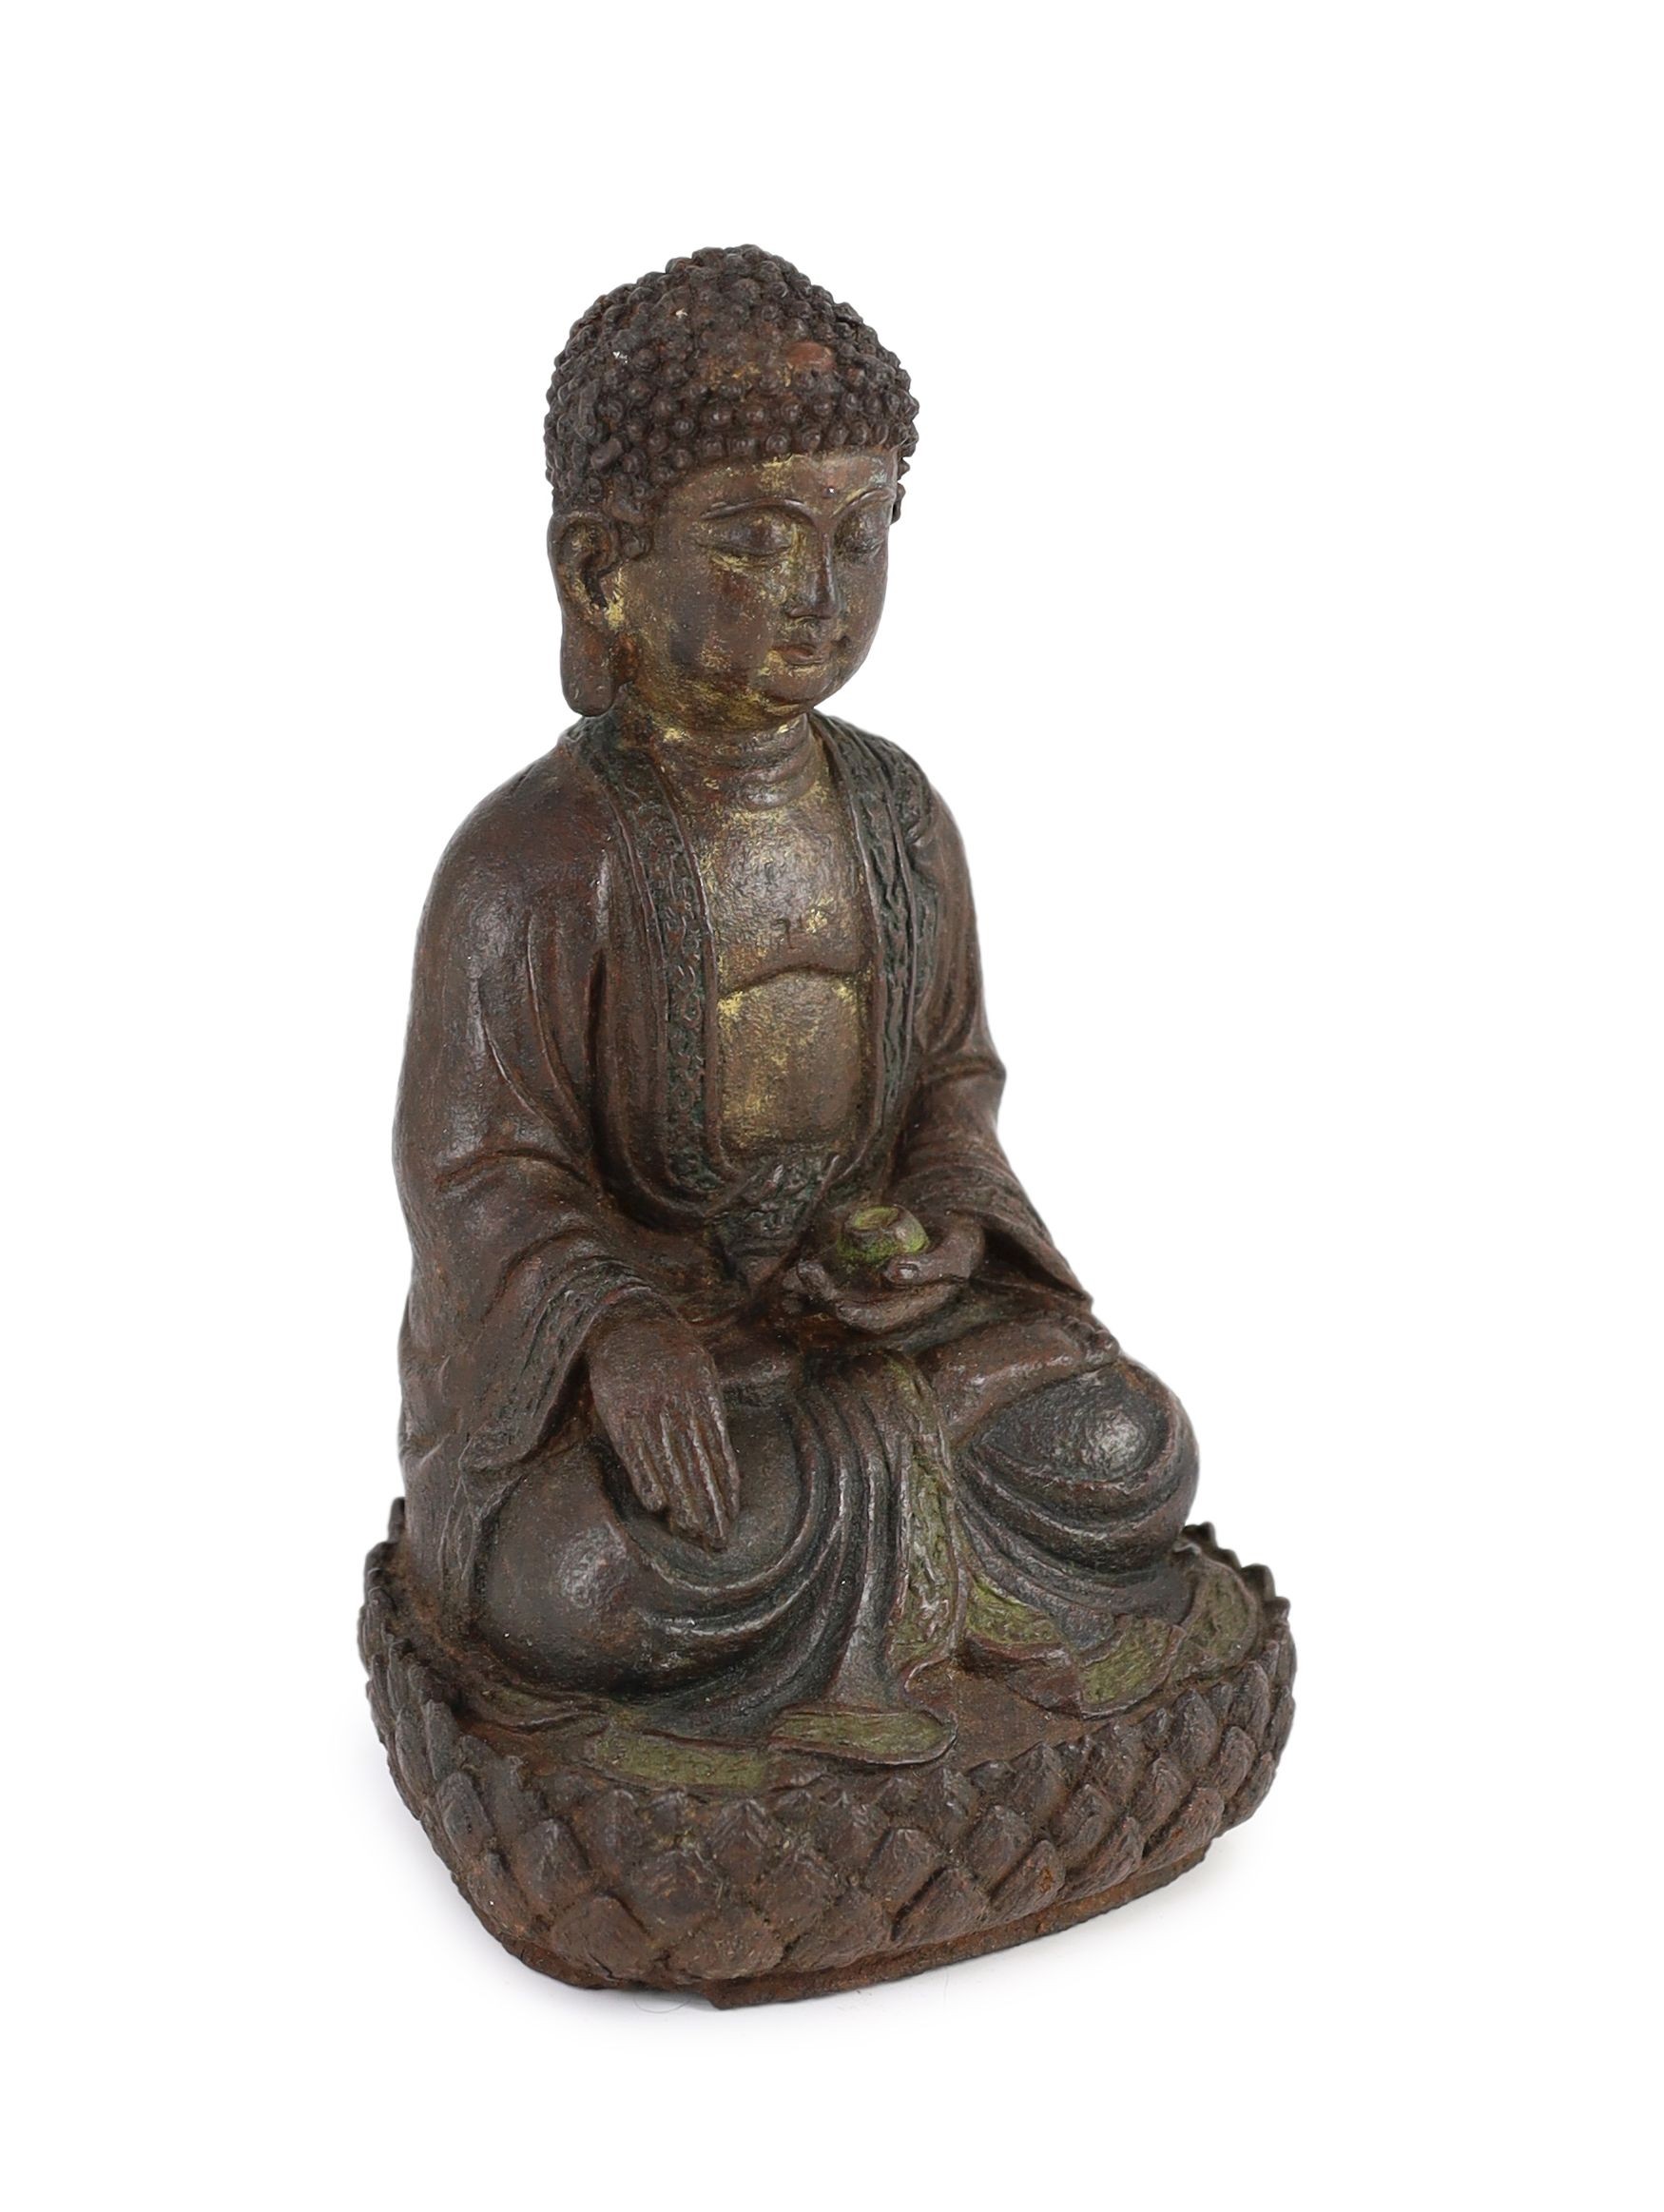 A Chinese Ming cast iron figure of Buddha Shakyamuni, 15th/16th century, 24.5cm high